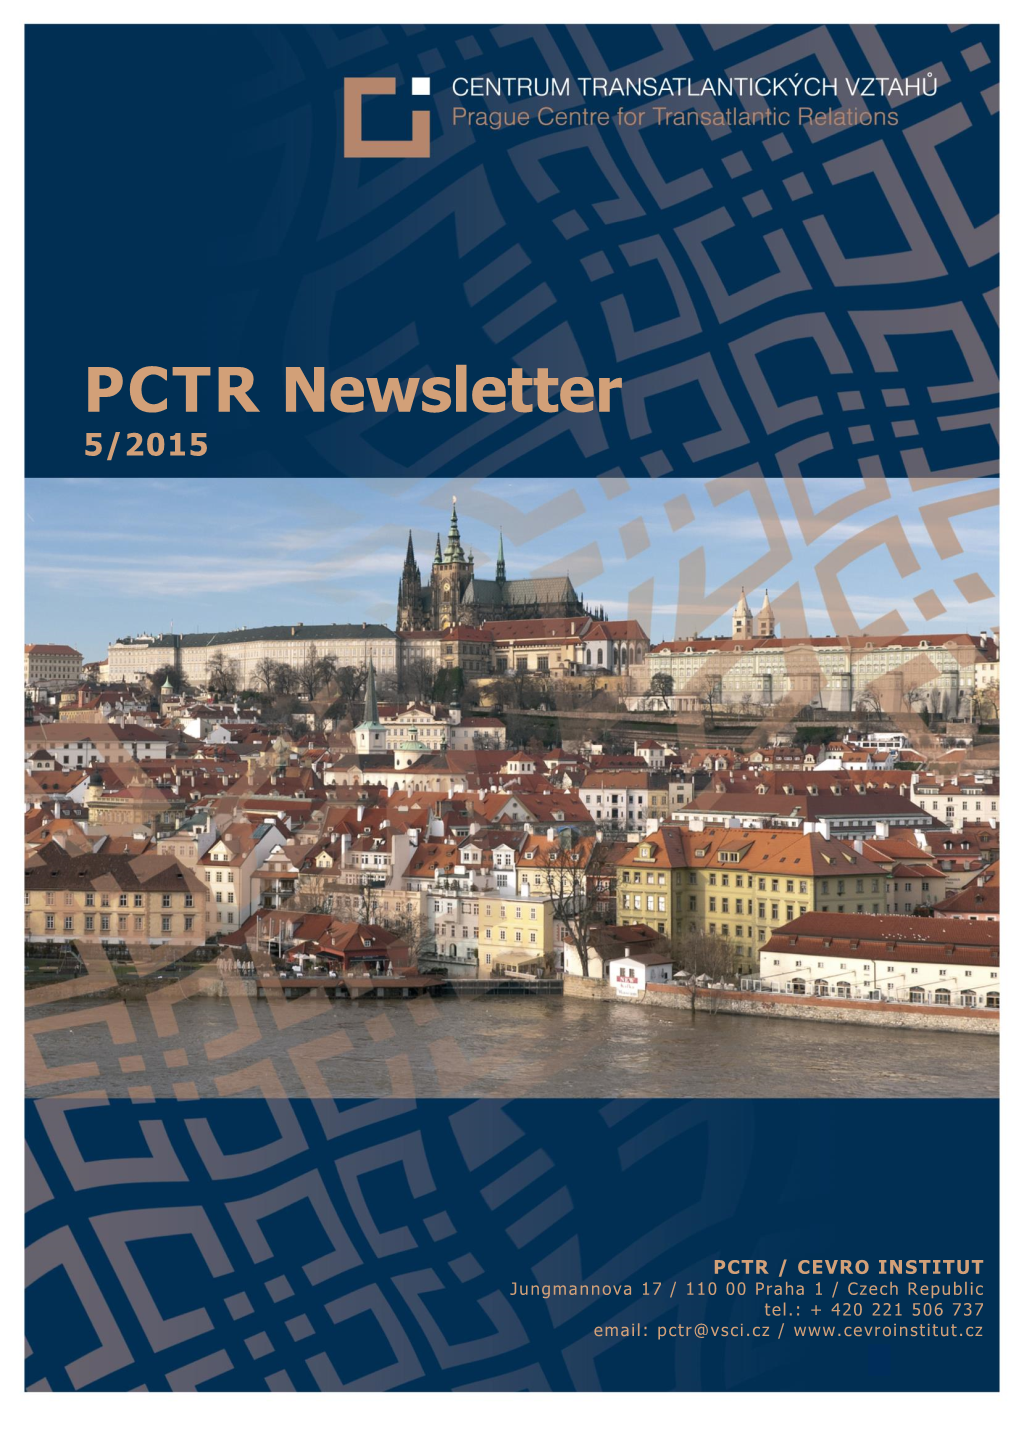 PCTR Newsletter (5/2015)